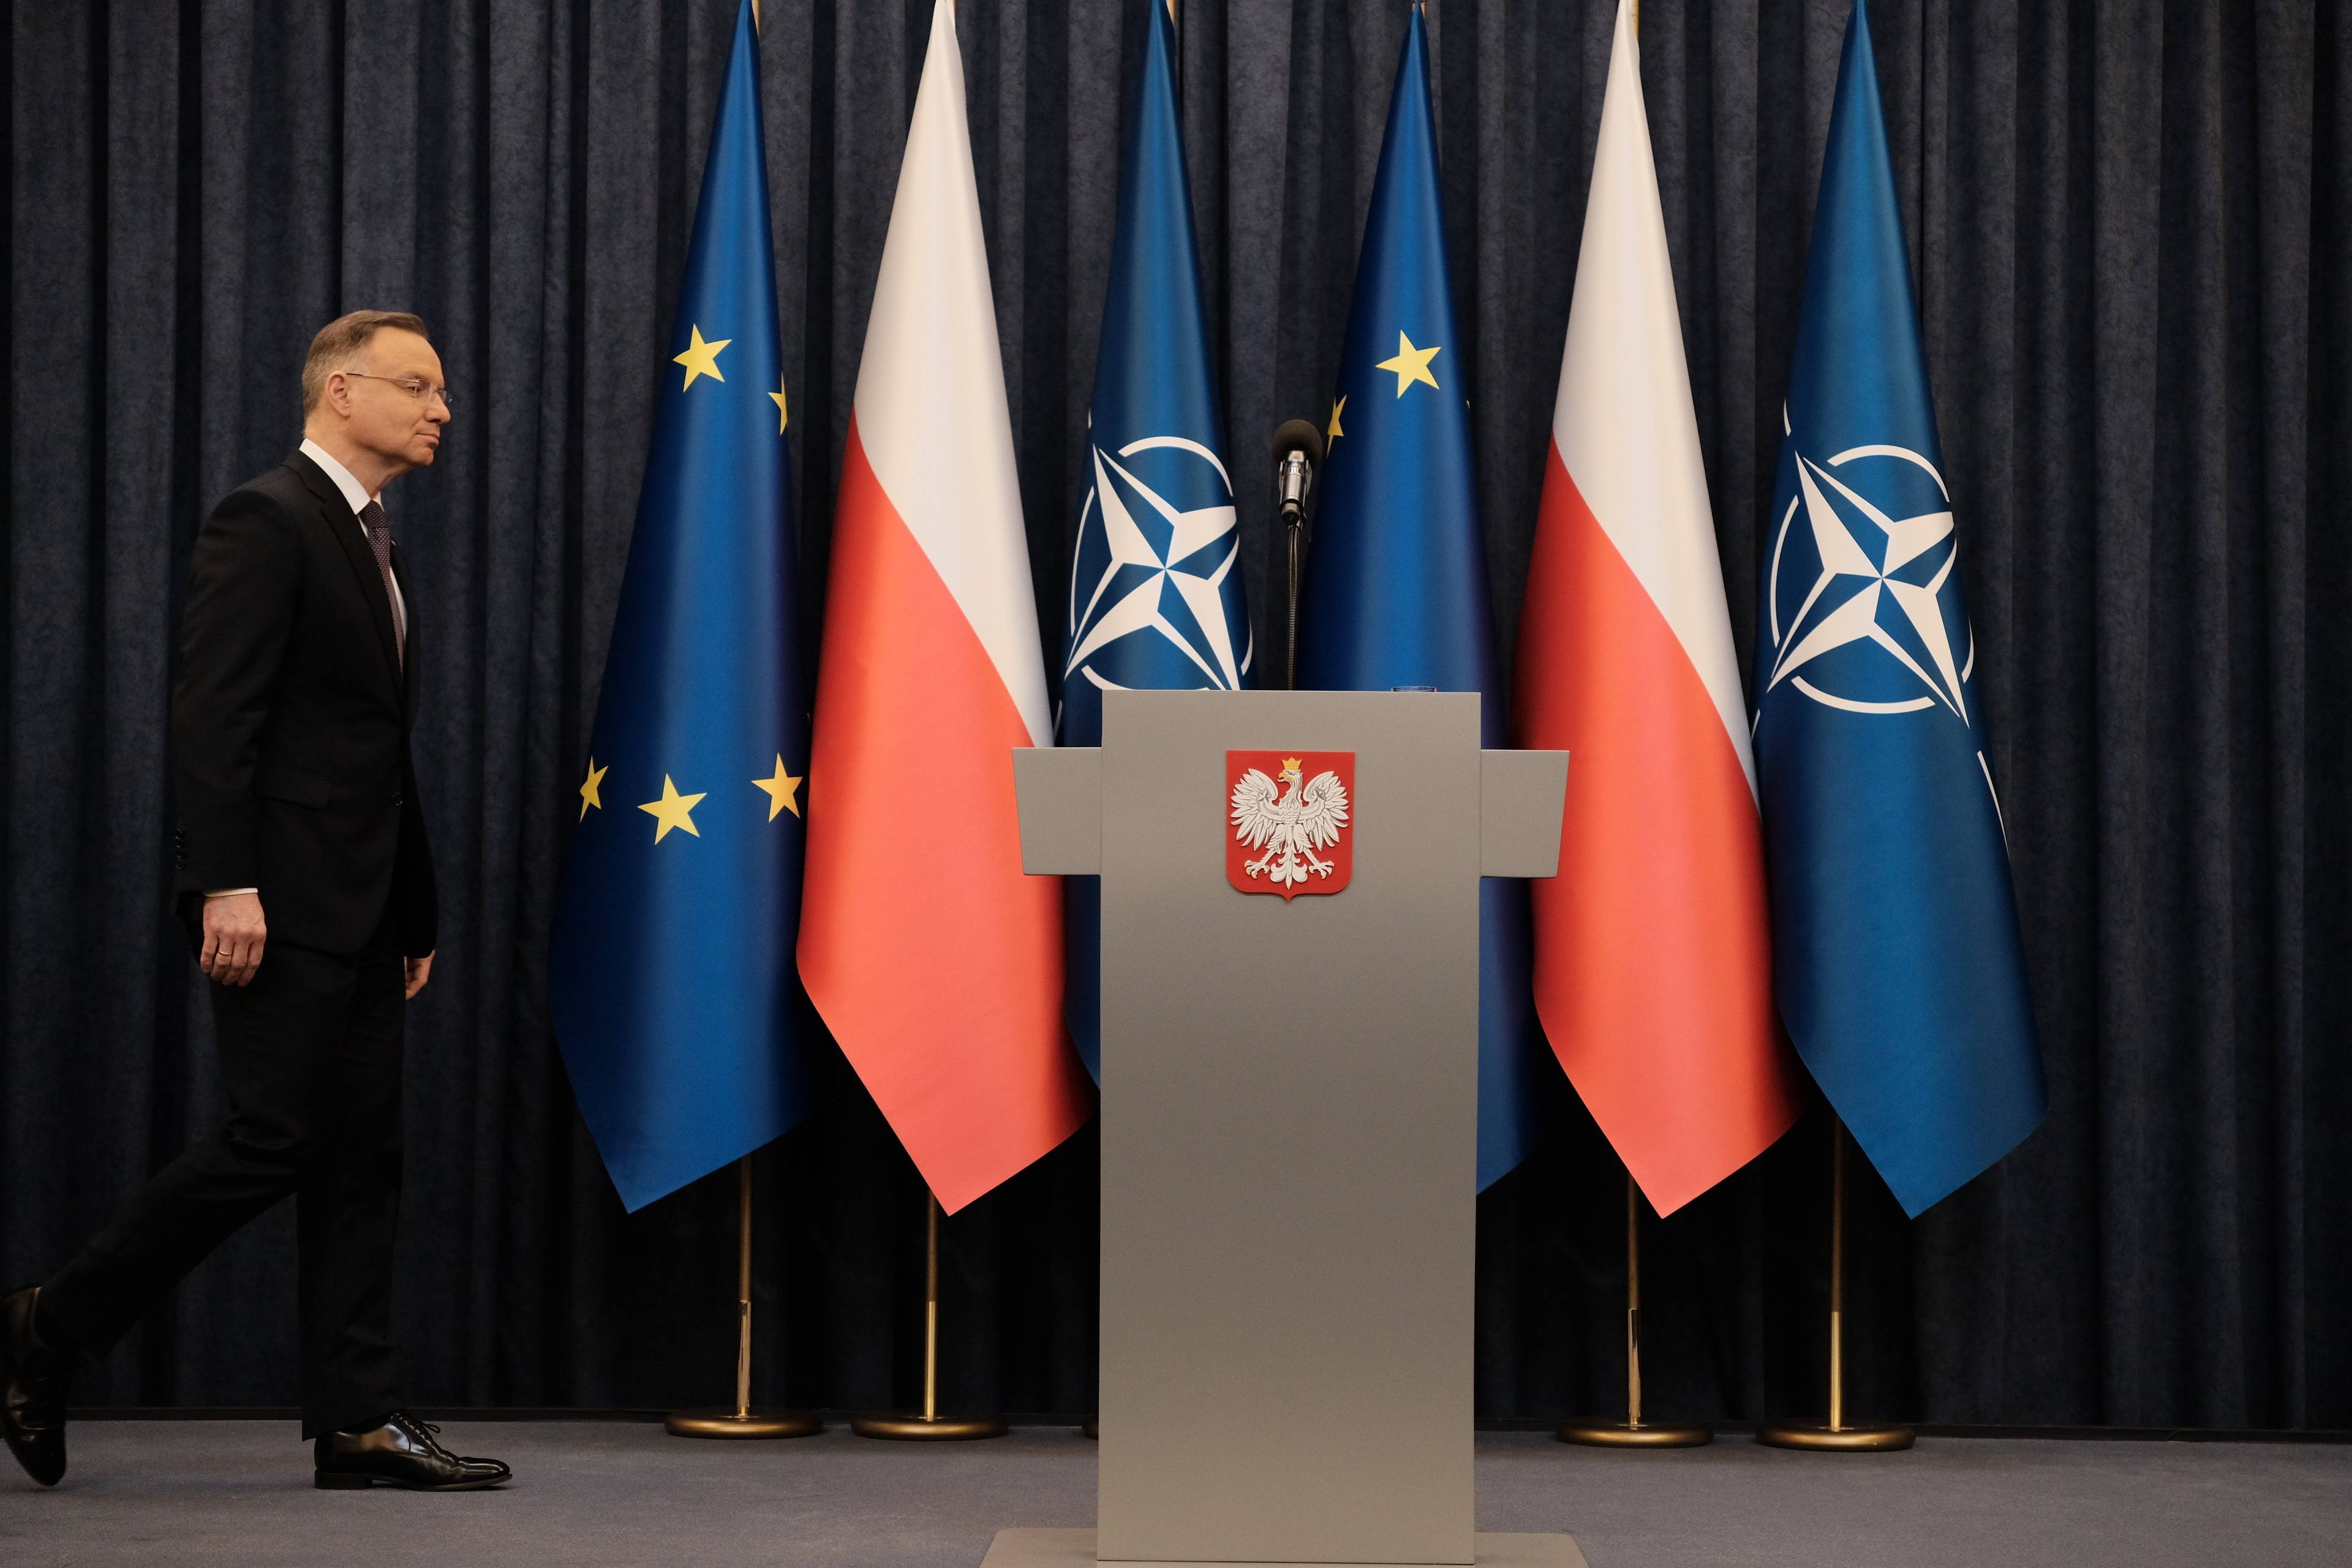 Prezydent Duda wchodzi na podium, na którym stoi szara mównica z godłem Polski